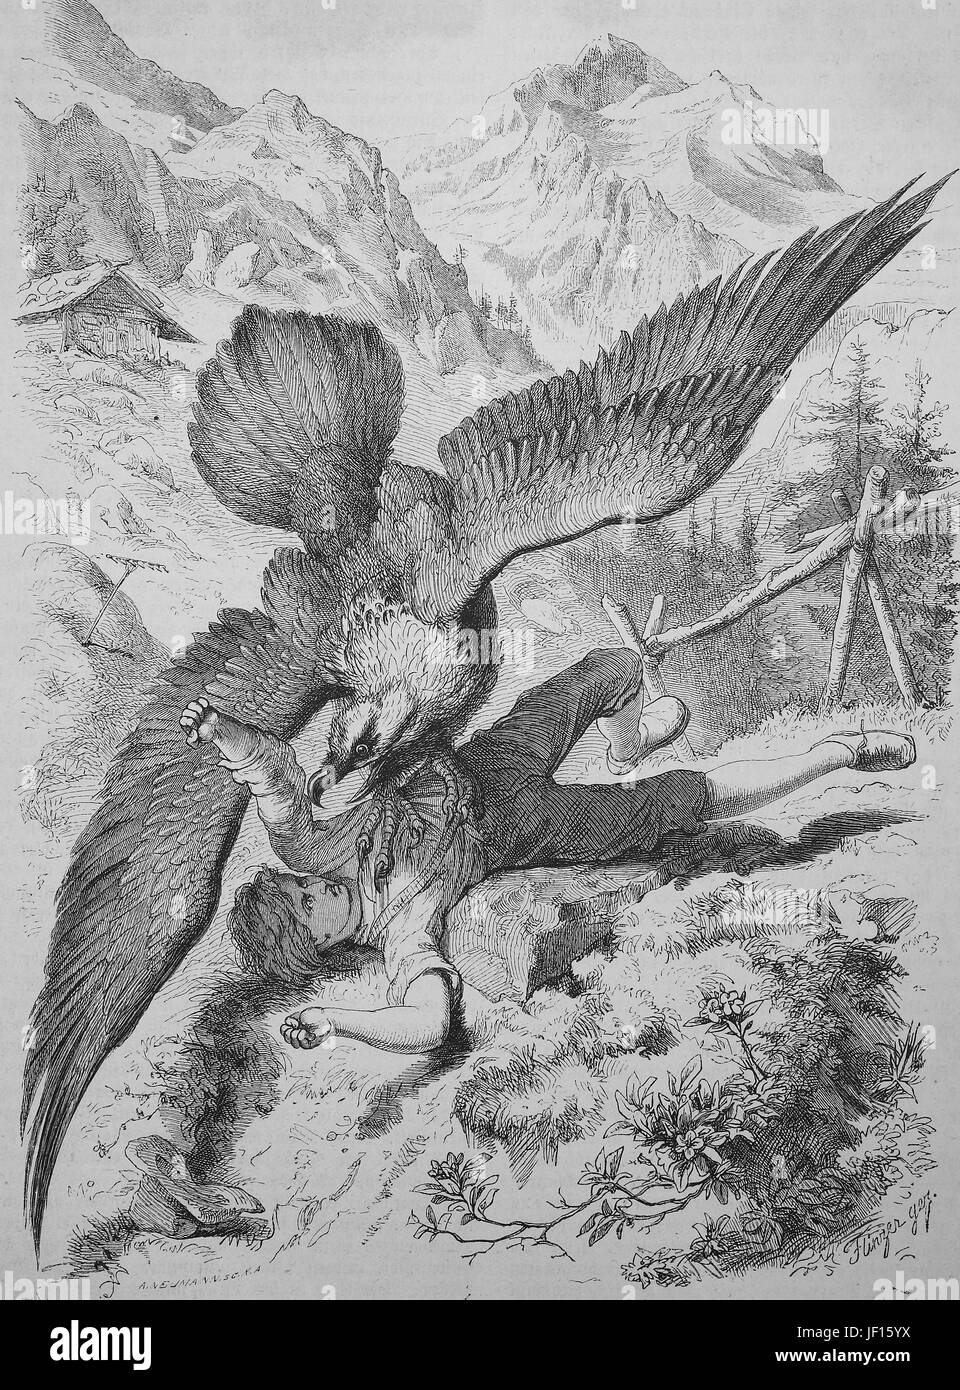 Un buitre ataca a un muchacho, ilustración histórica de la vida animal en el mundo alpino, mejor reproducción digital de una impresión original de 1888 Foto de stock